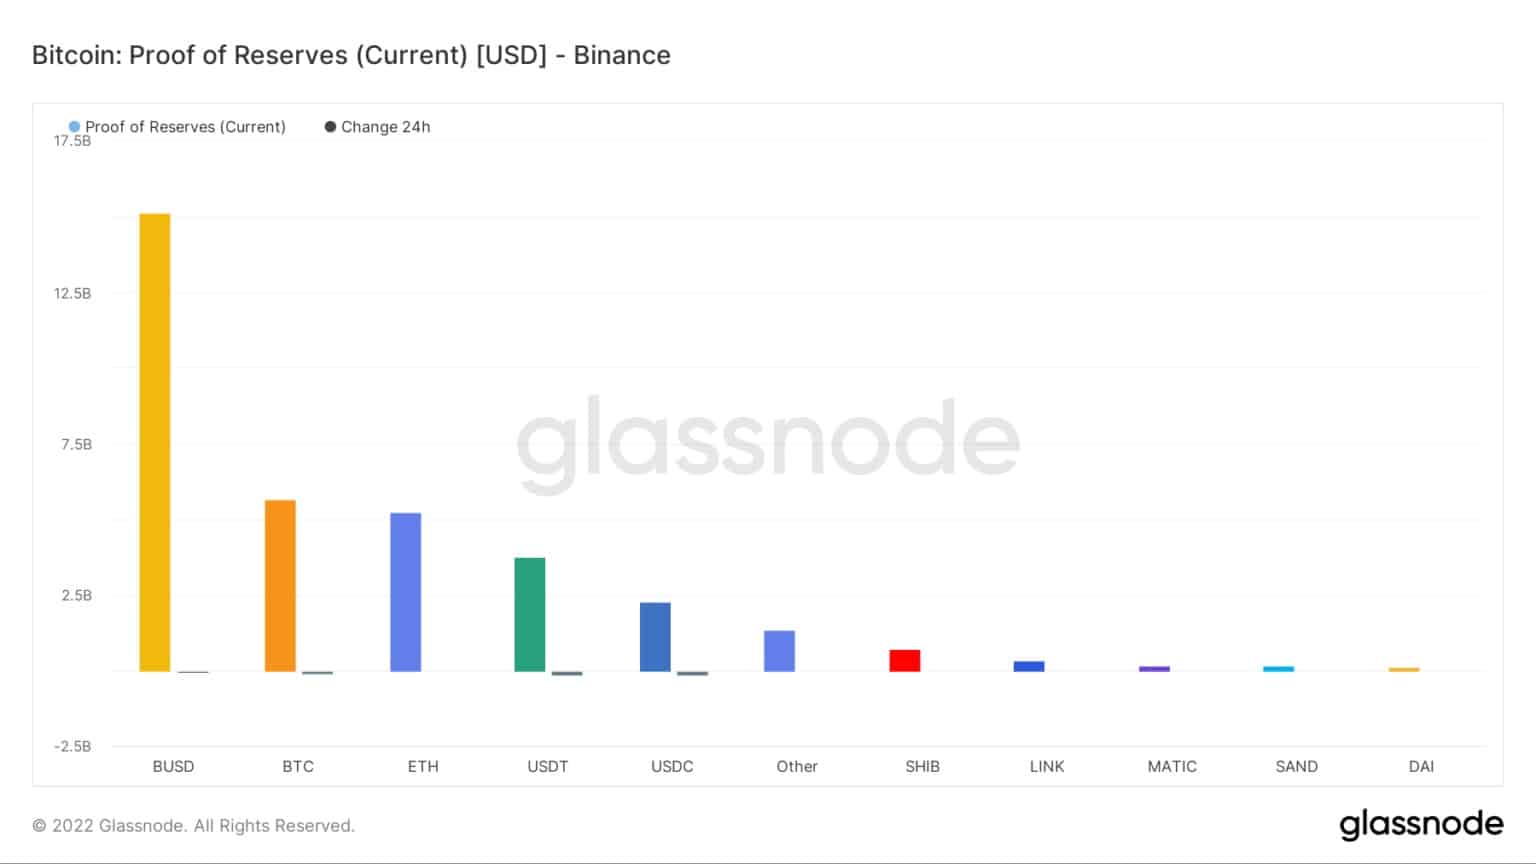 Proof of reserves - Binance / Source: Glassnode